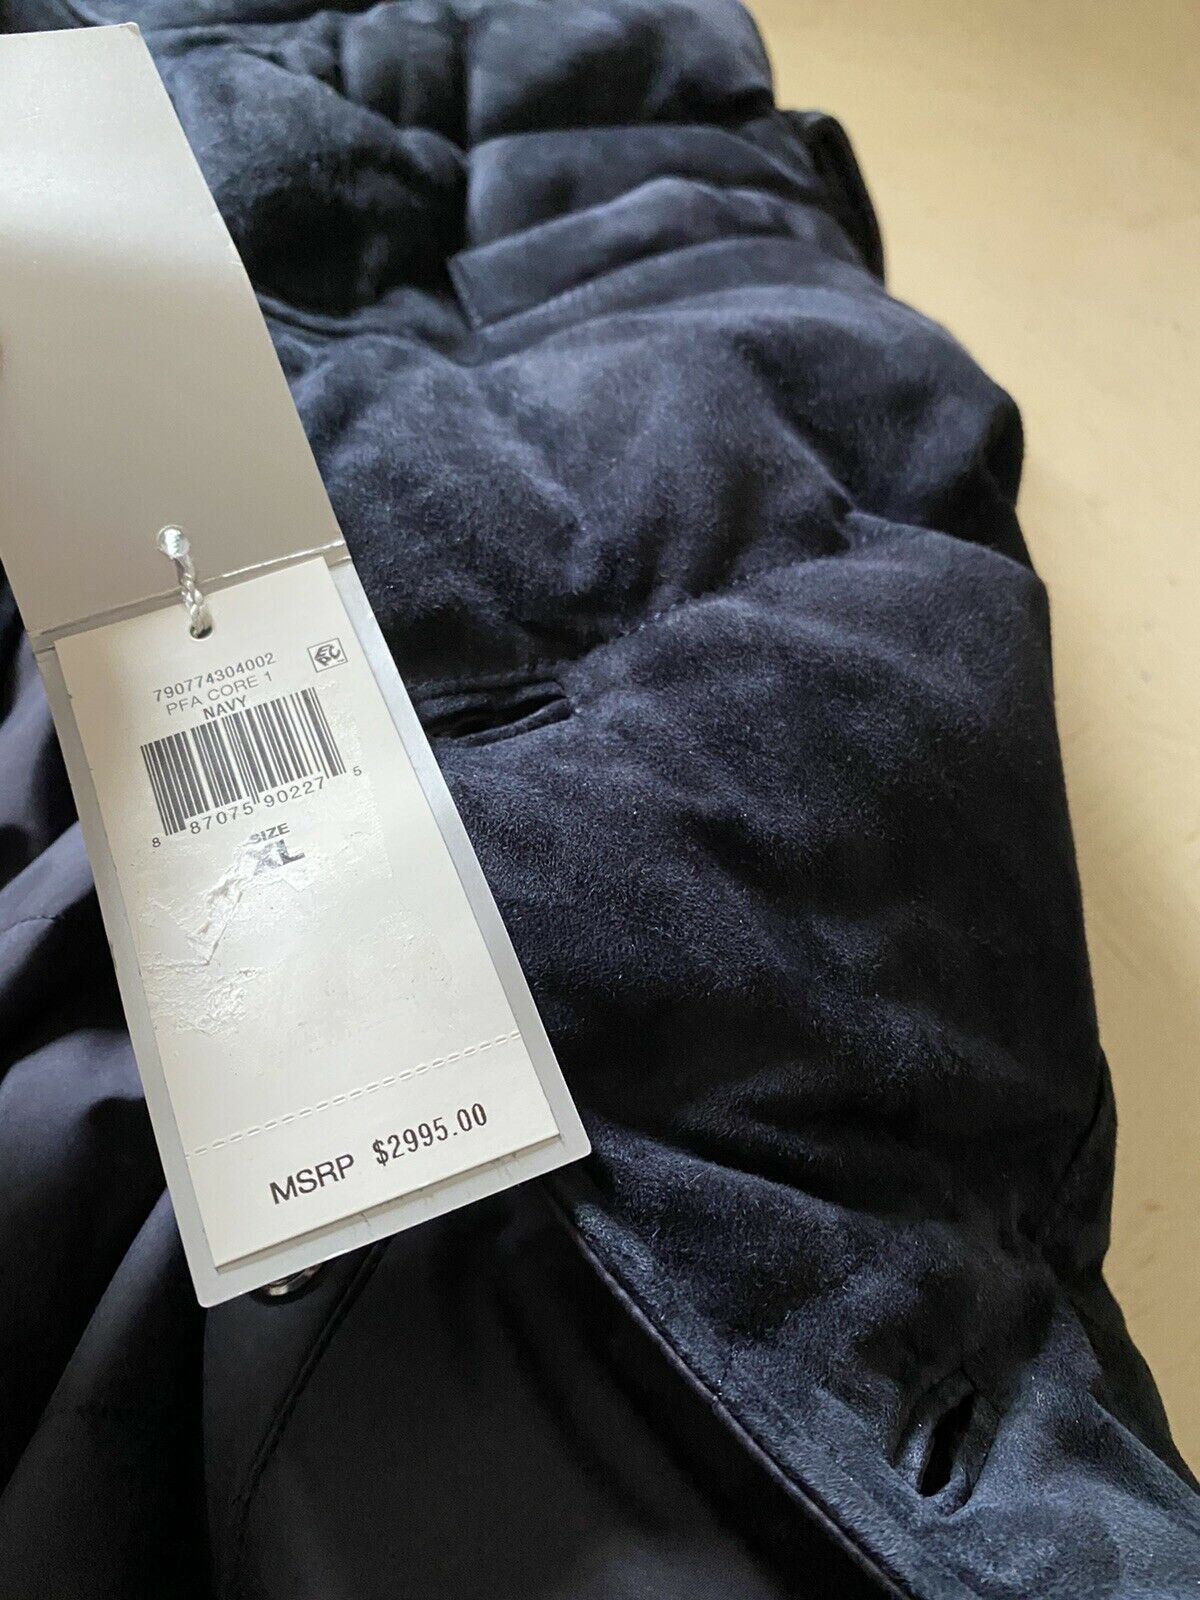 New $2995 Ralph Lauren Purple Label Men Marbell Reversible Suede Vest Navy XL